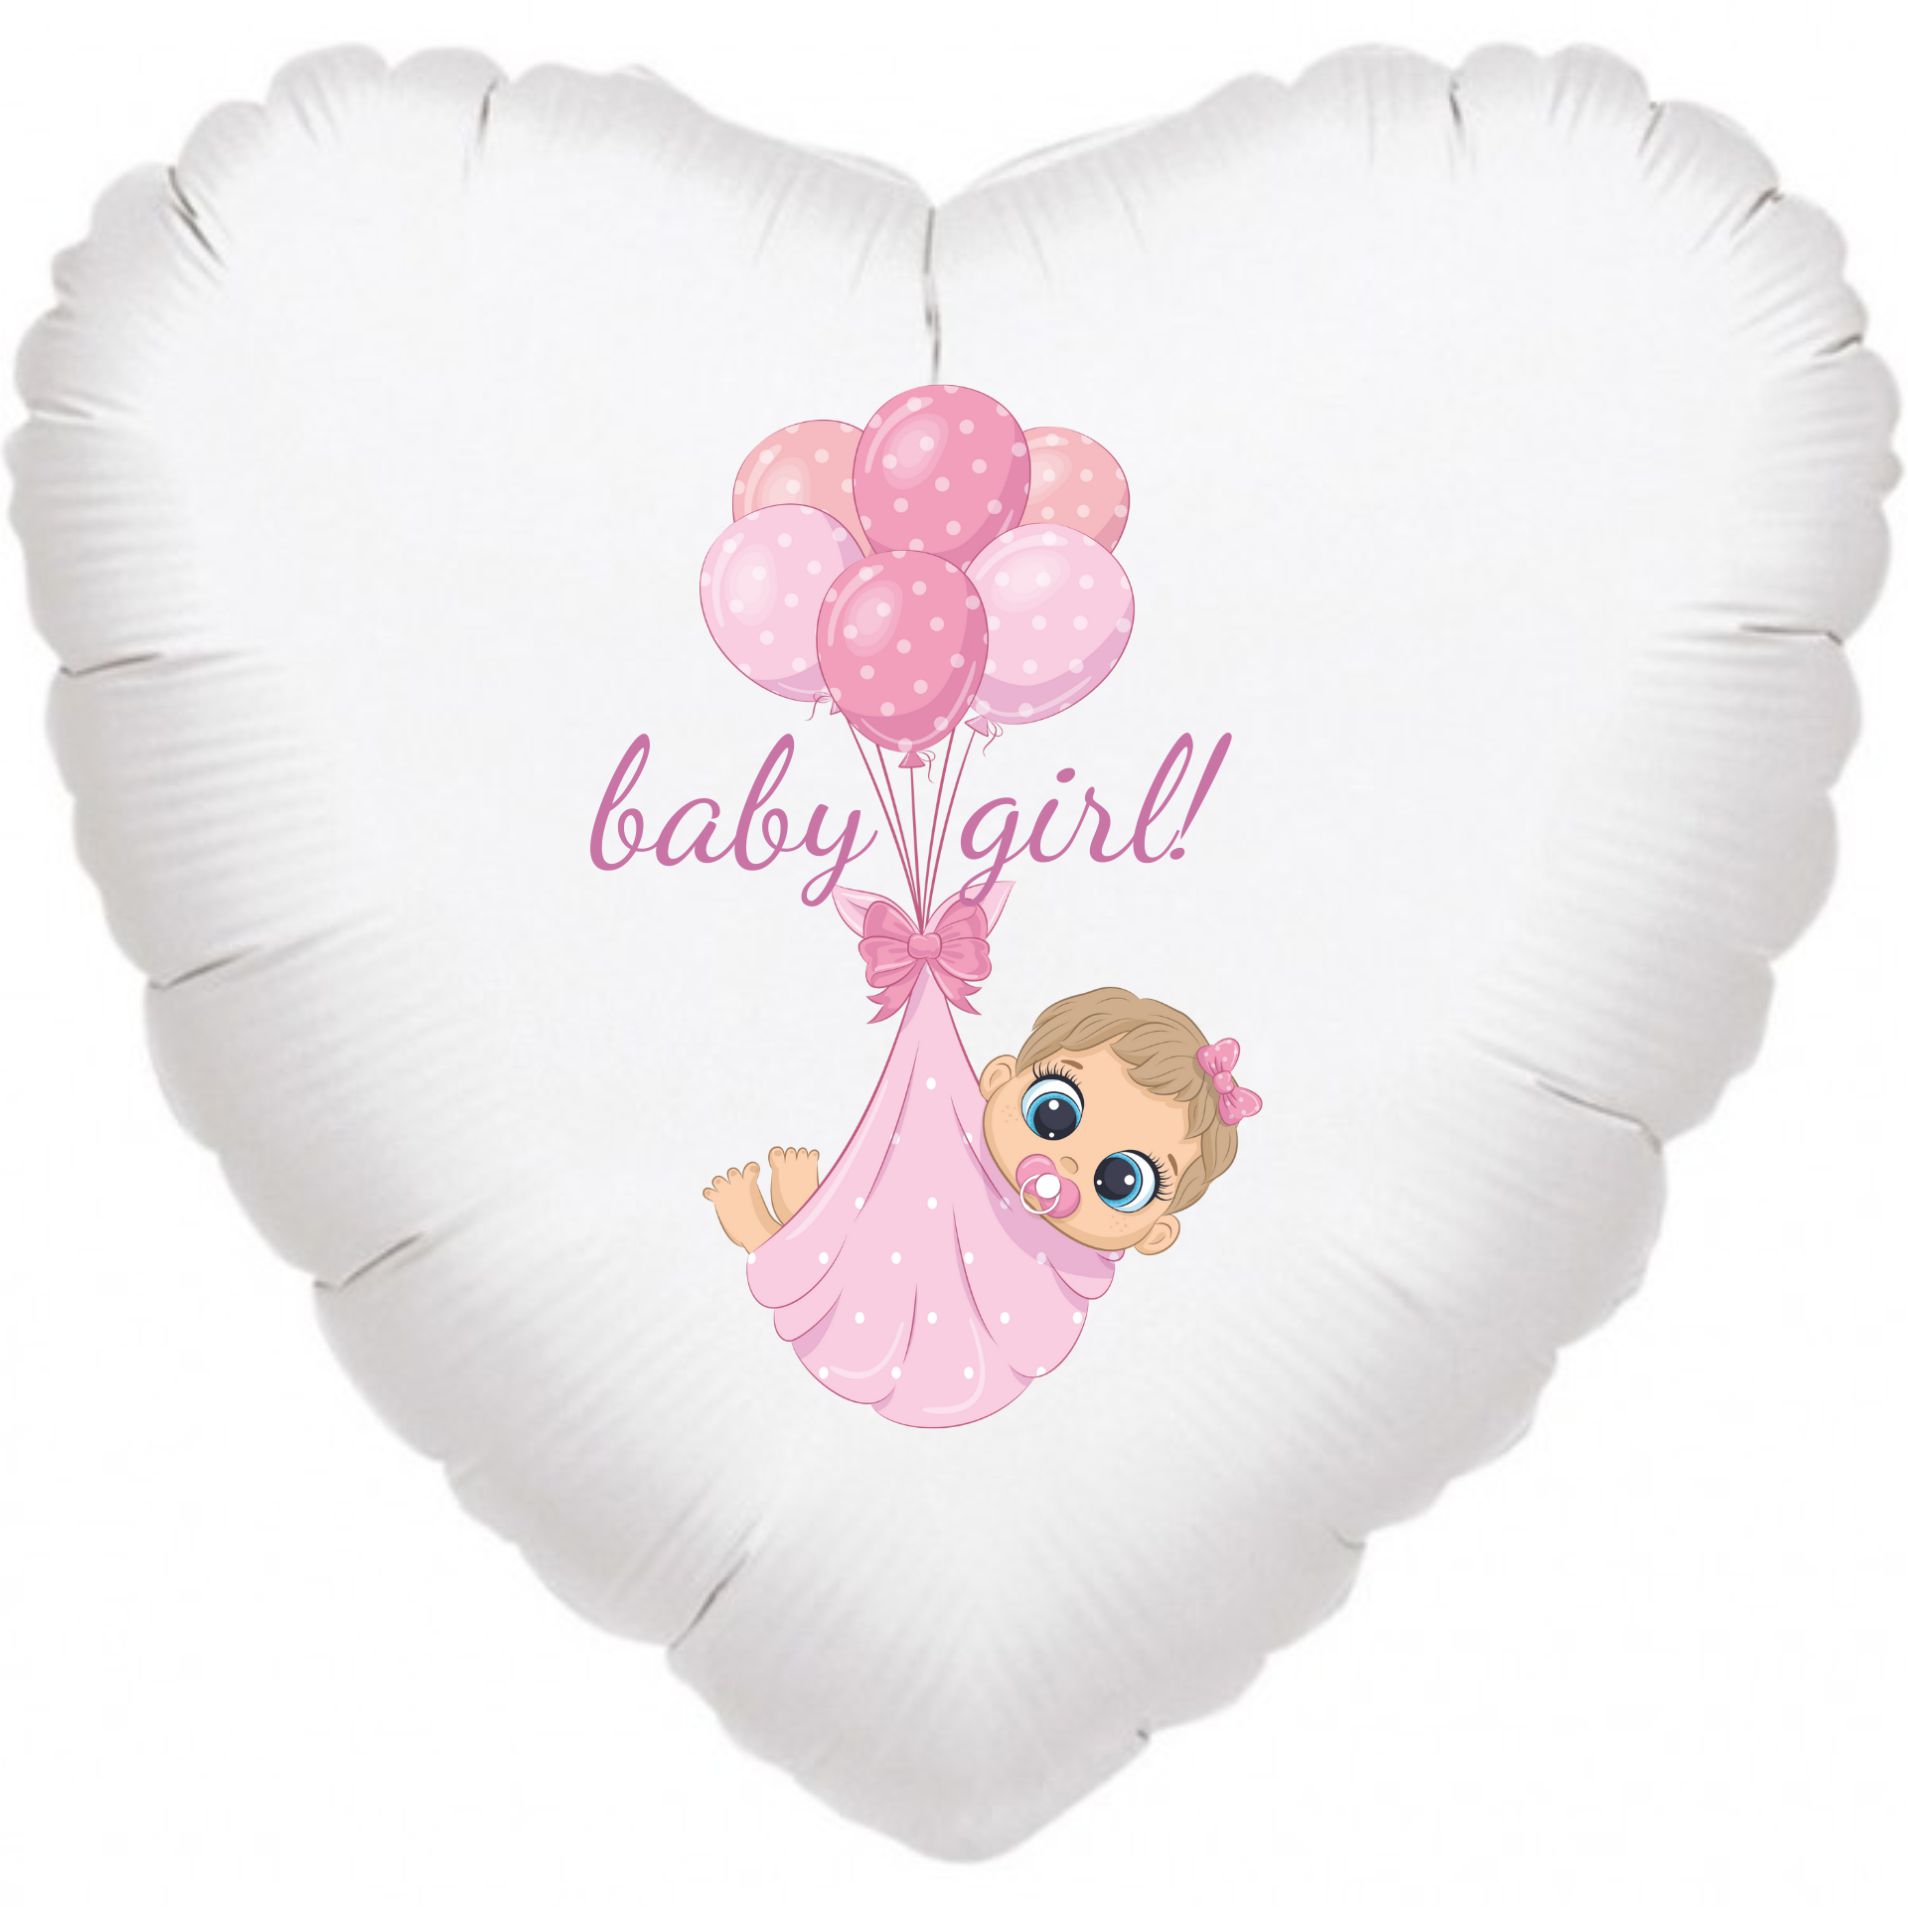 Baby girl srdce balónek